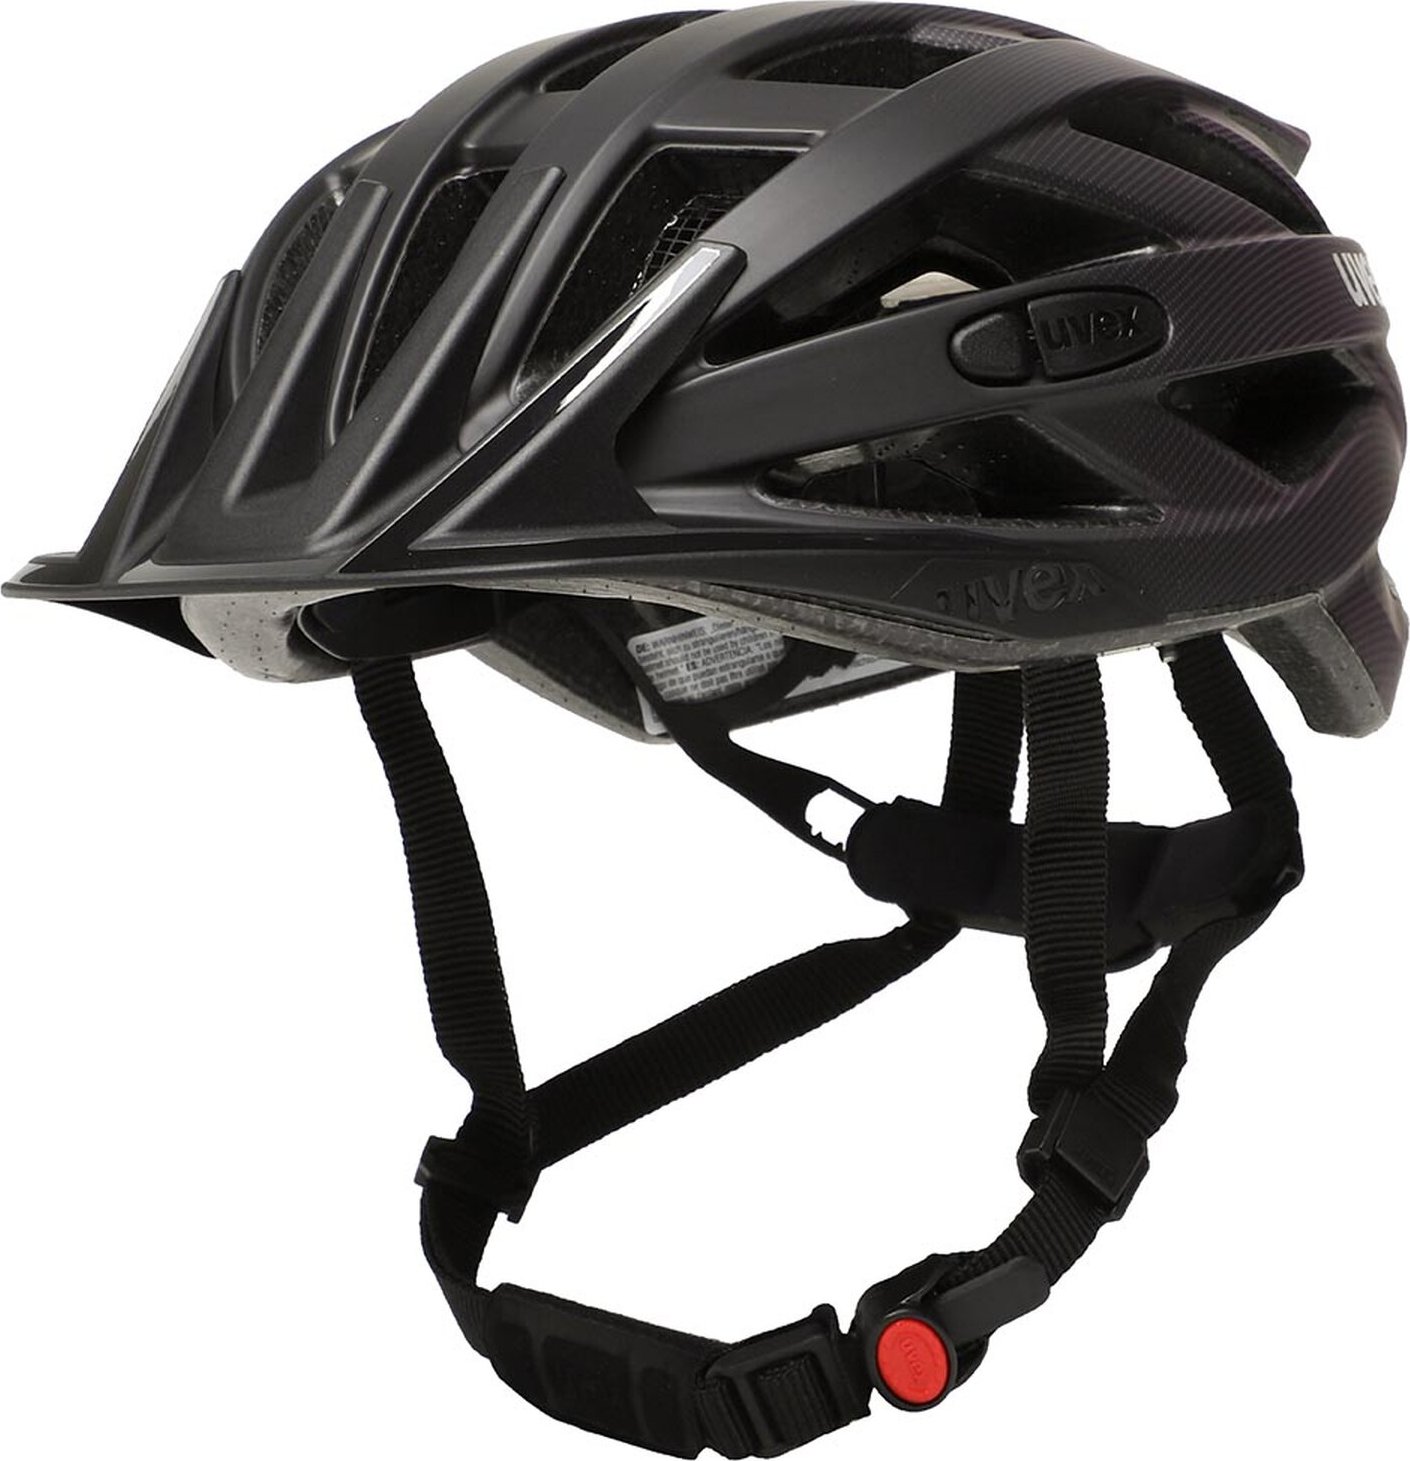 Cyklistická helma Uvex I-Vo Cc 4106130515 Black/Plum Matt